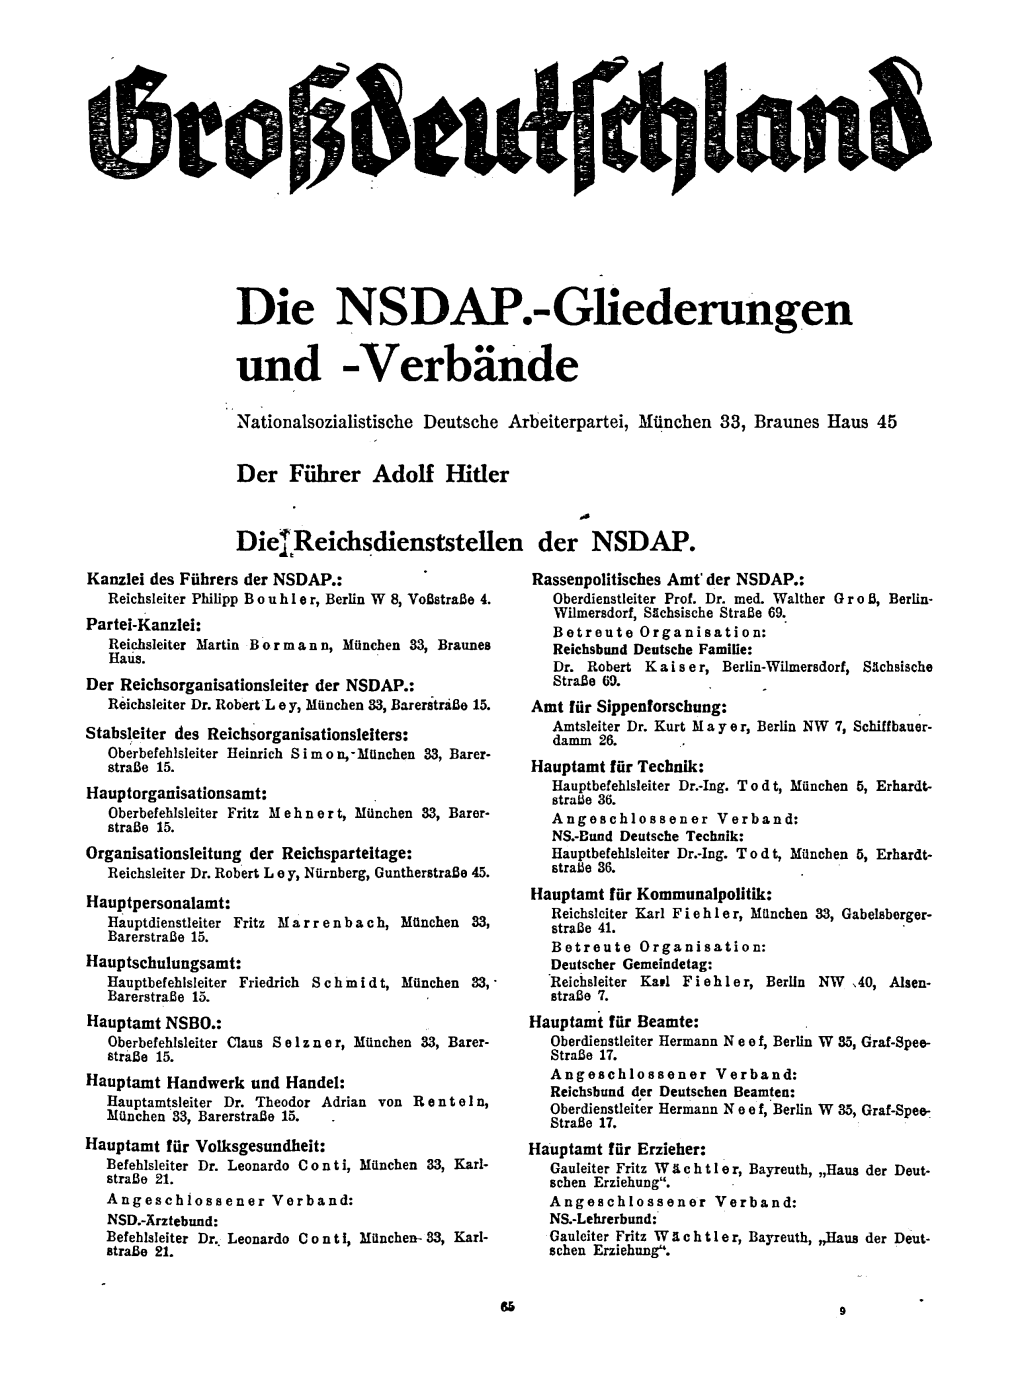 Grossdeutschland NSDAP Und Verbaende, Reichsregierung